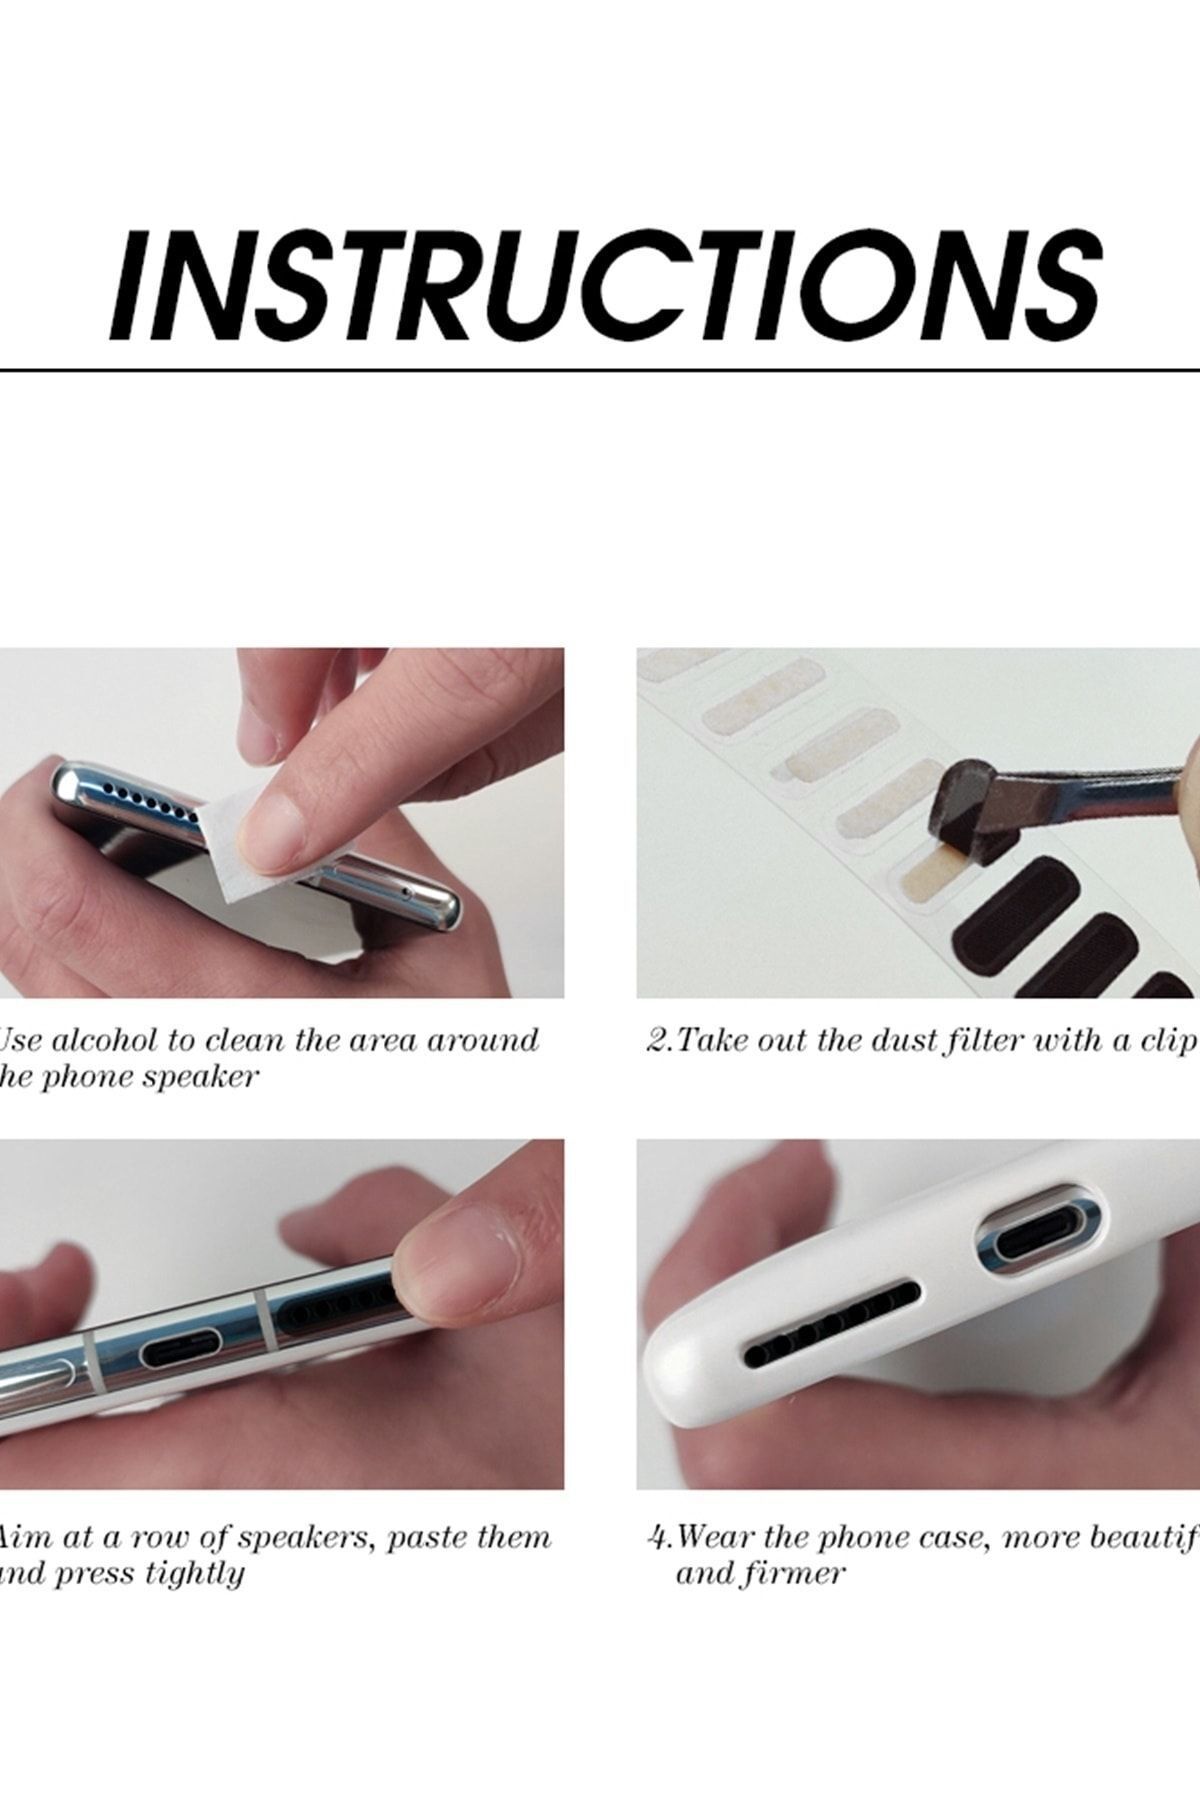 15 عدد اسپیکر ضد گرد و غبار و محافظ میکروفون برای بلندگوی تلفن همراه